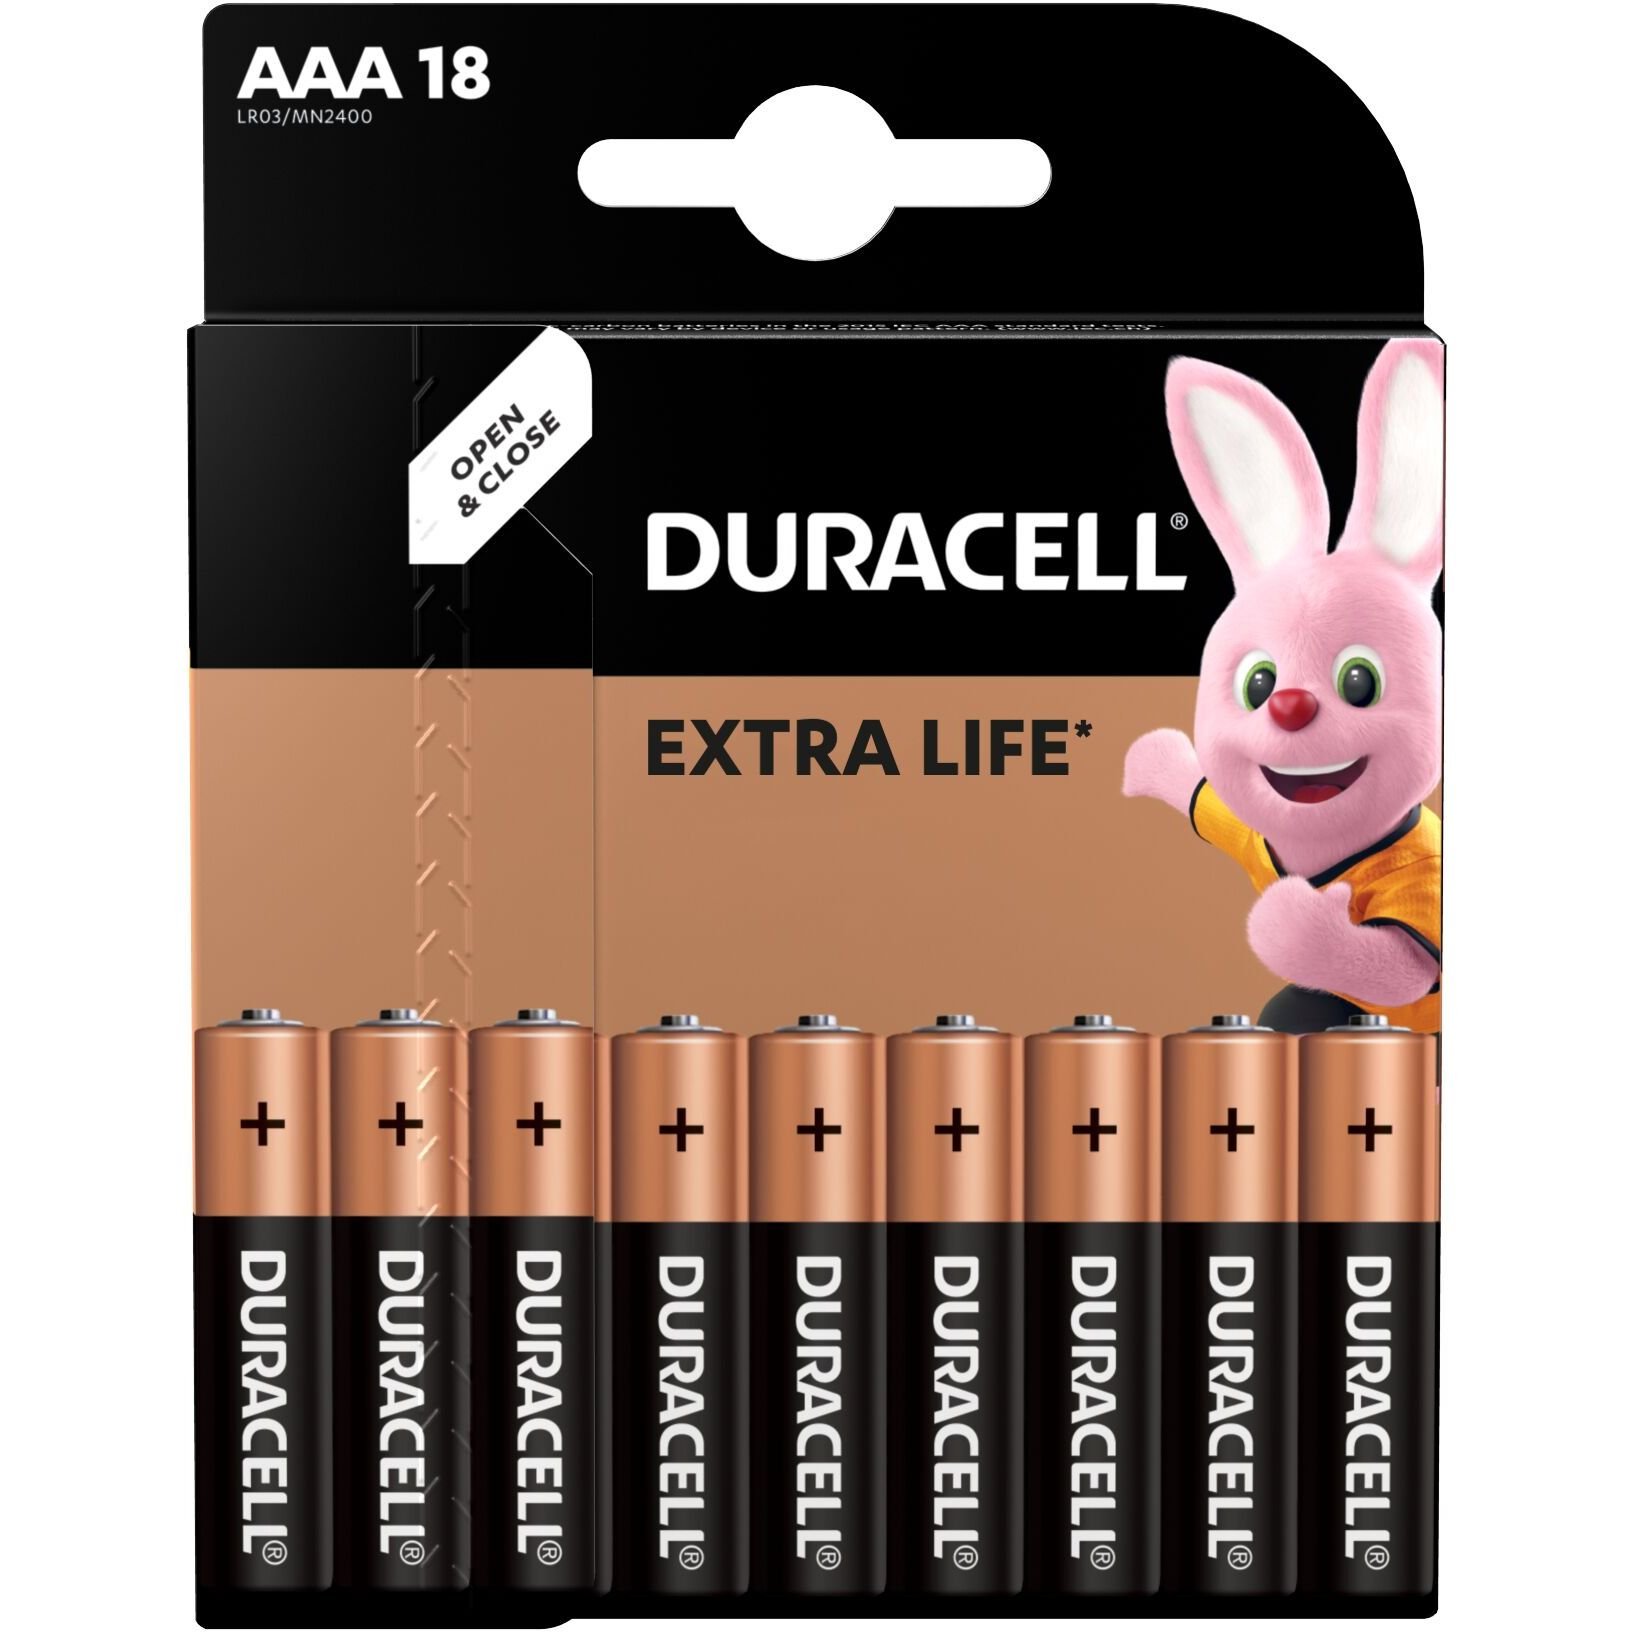 Лужні батарейки мізинчикові Duracell 1.5 V AAA LR03/MN2400, 18 шт. (737056) - фото 2